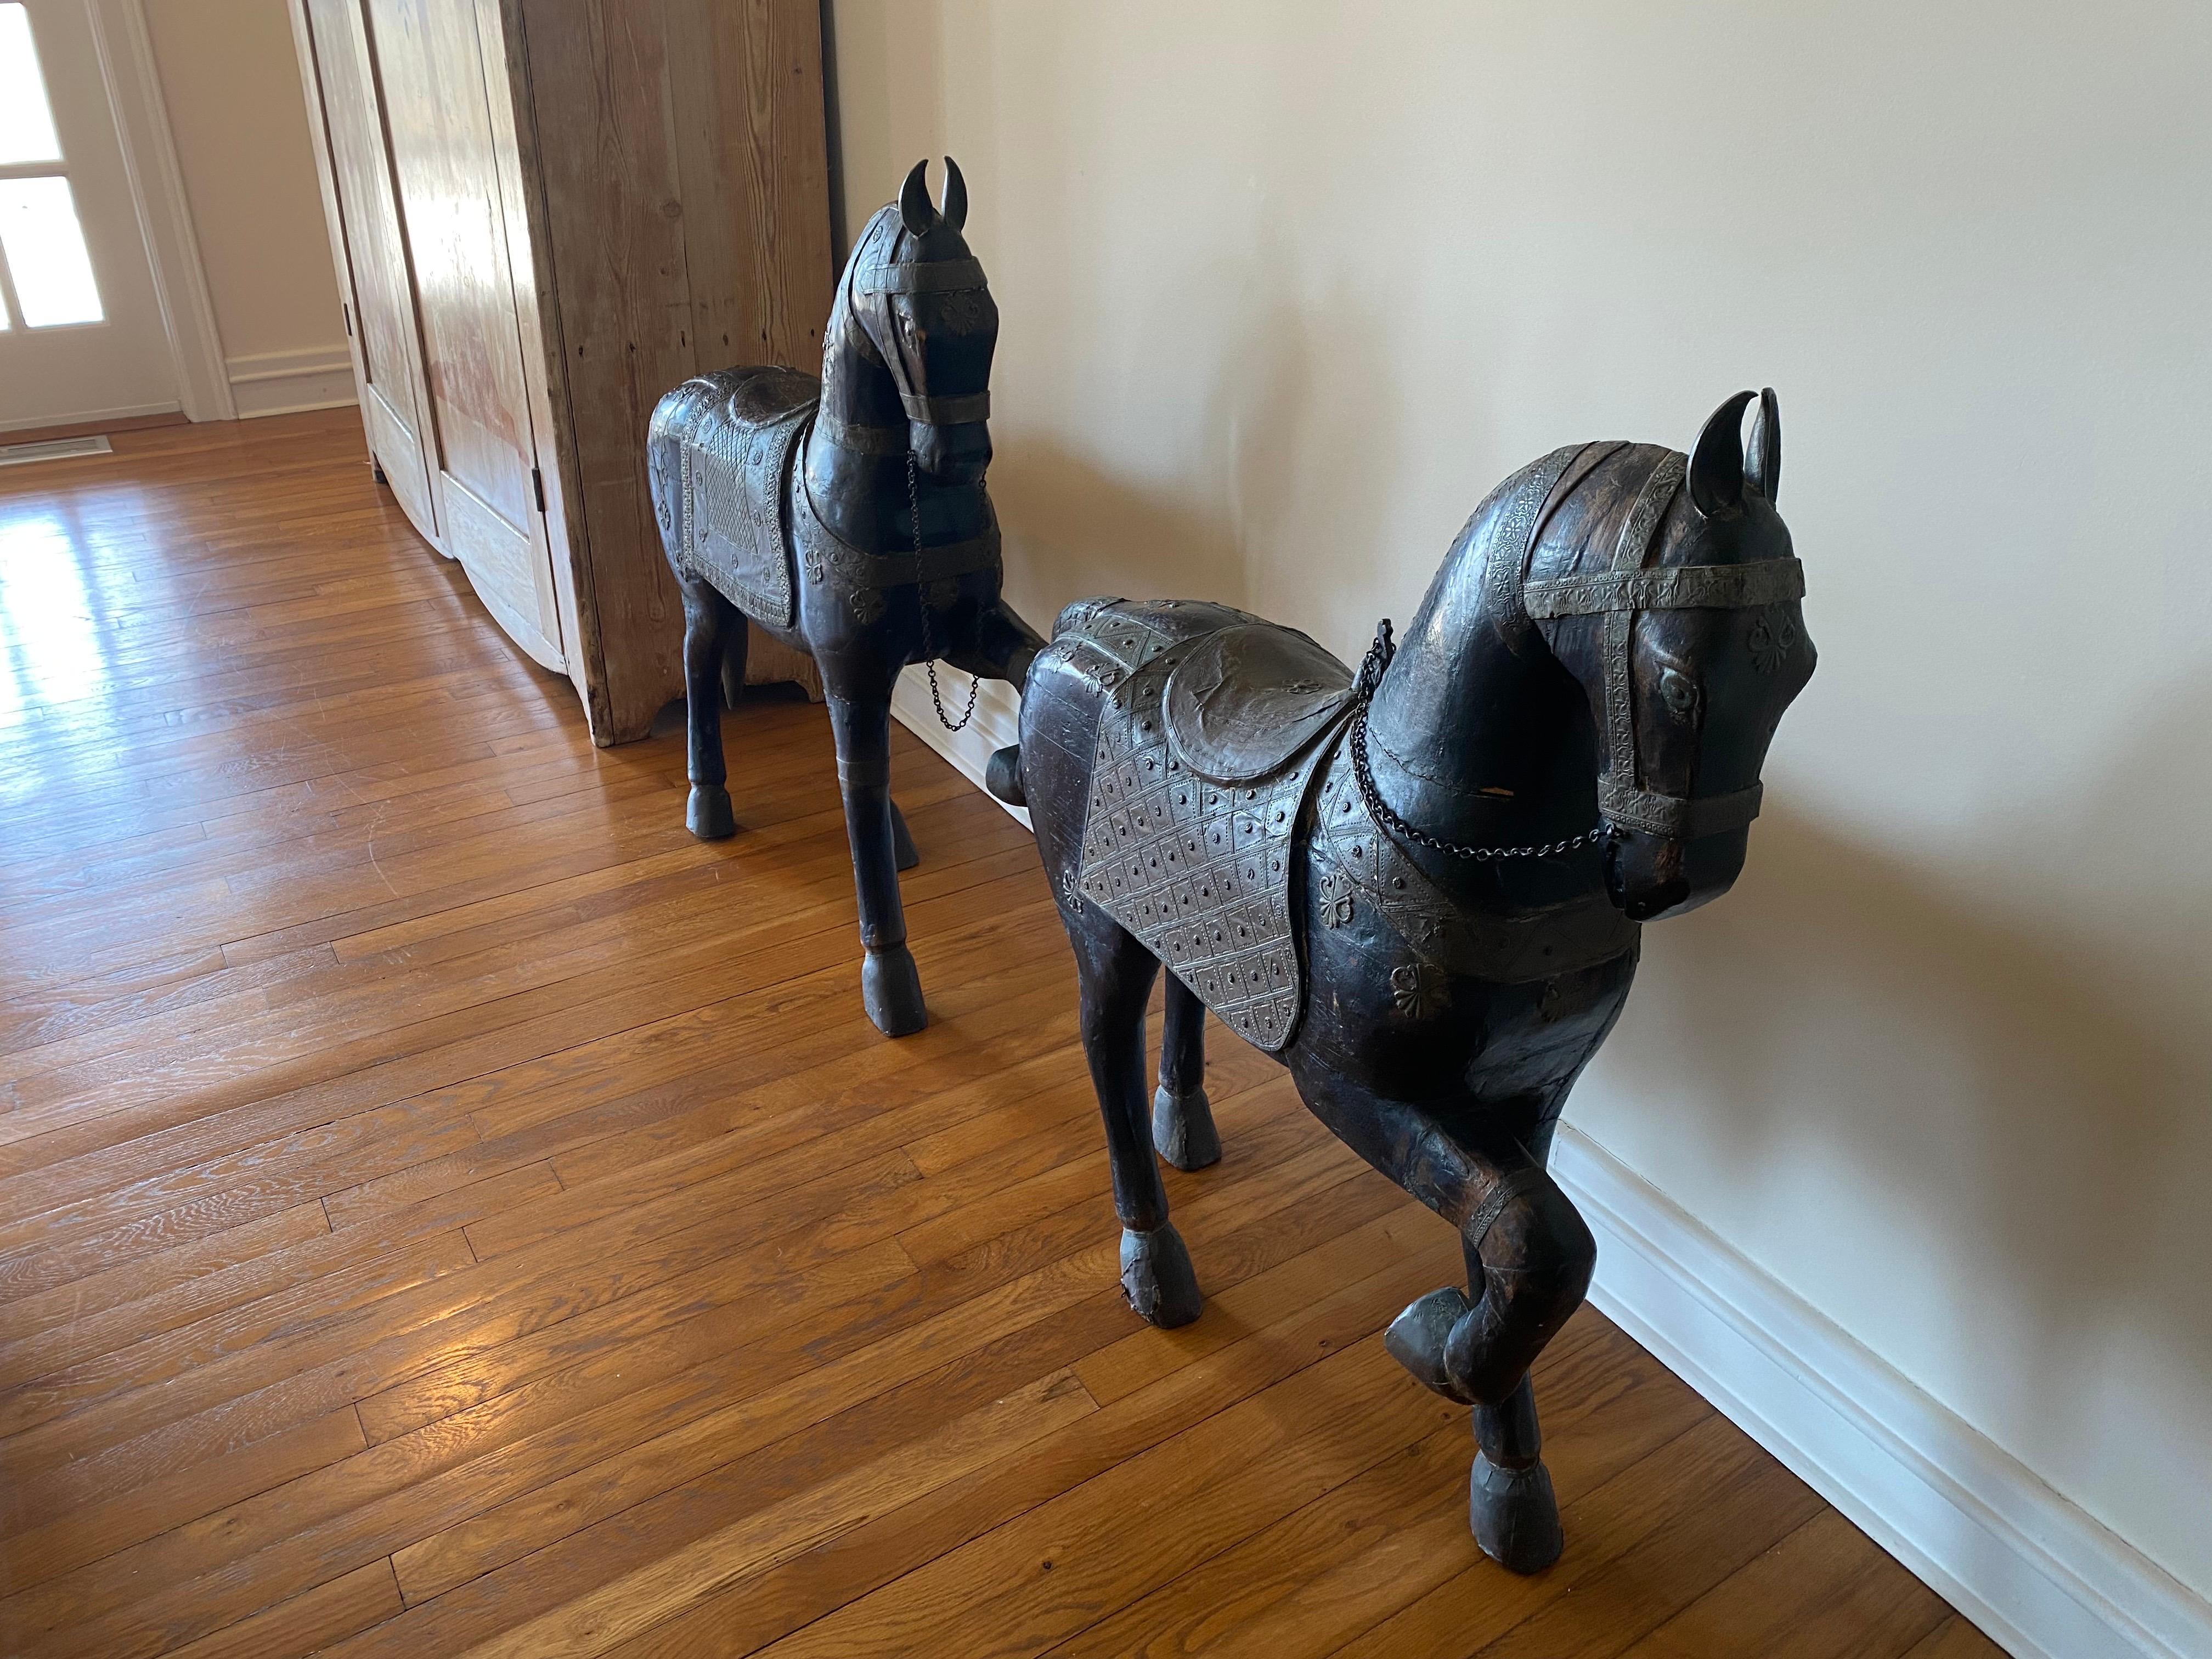 Paire de sculptures indiennes de chevaux peints en bois sculpté de la fin du 19e siècle
Chevaux en bois sculpté, peints en noir, avec des motifs métalliques élaborés sur la selle et le harnais. Usure générale, séparation et un éclat de bois sur le